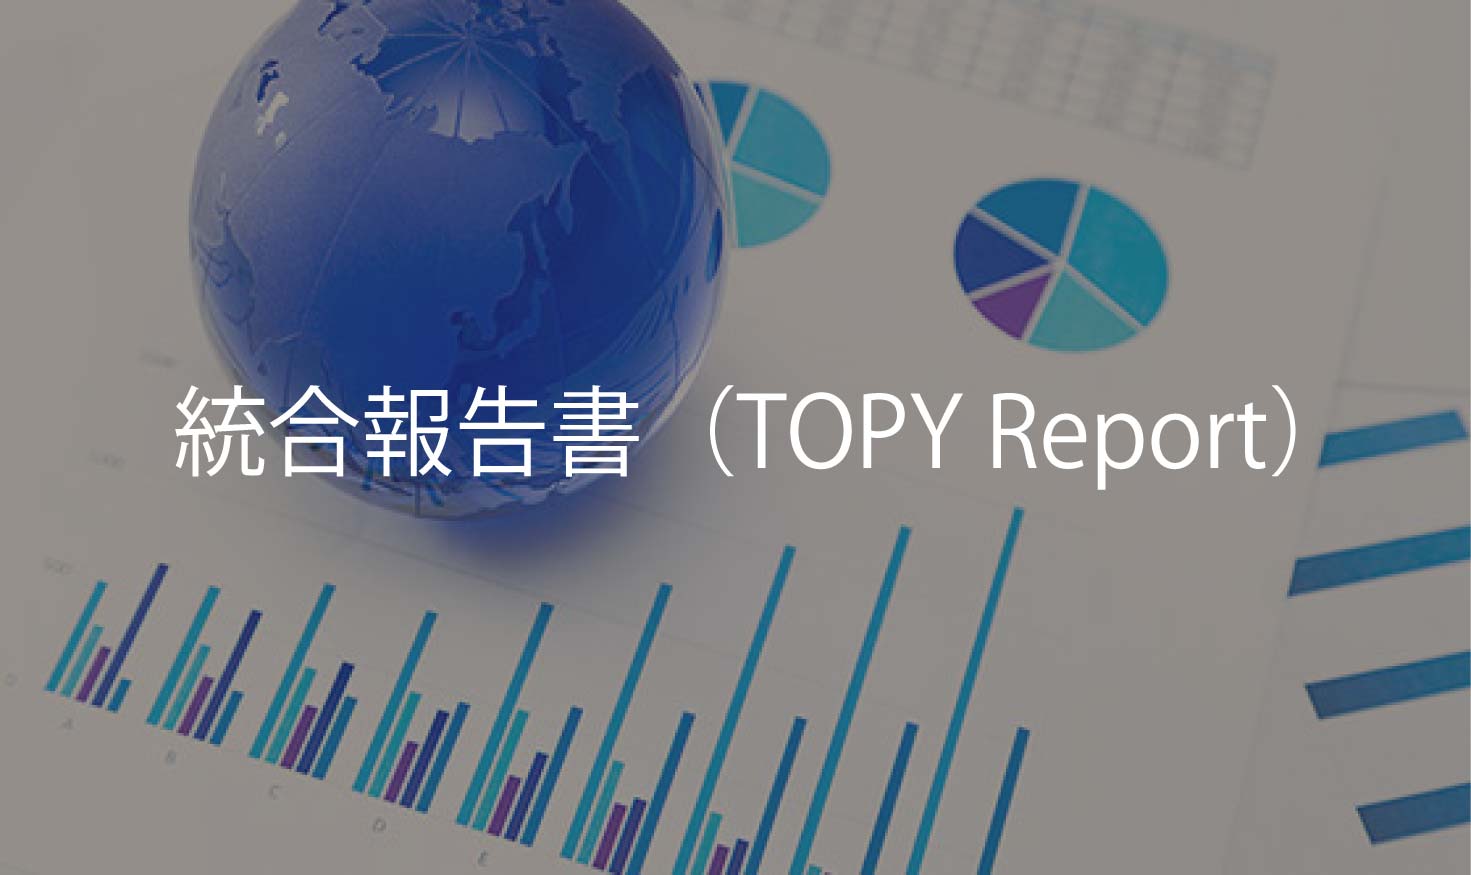 TOPY Report